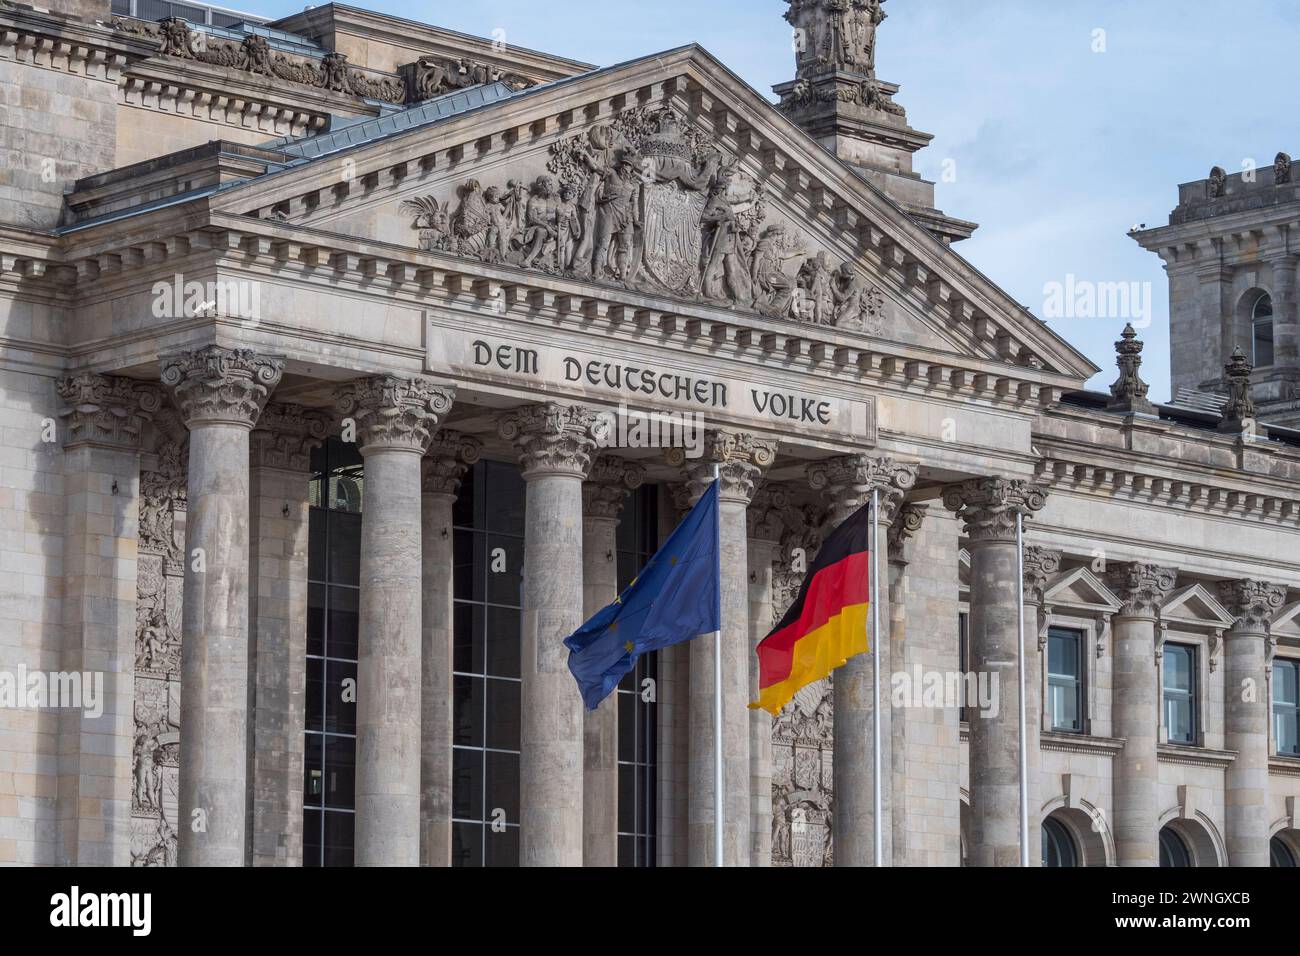 Bandiere dell'Unione europea e della Germania che battono davanti al DEM Deutschen Volke sul Reichstag di Berlino, Germania. Foto Stock